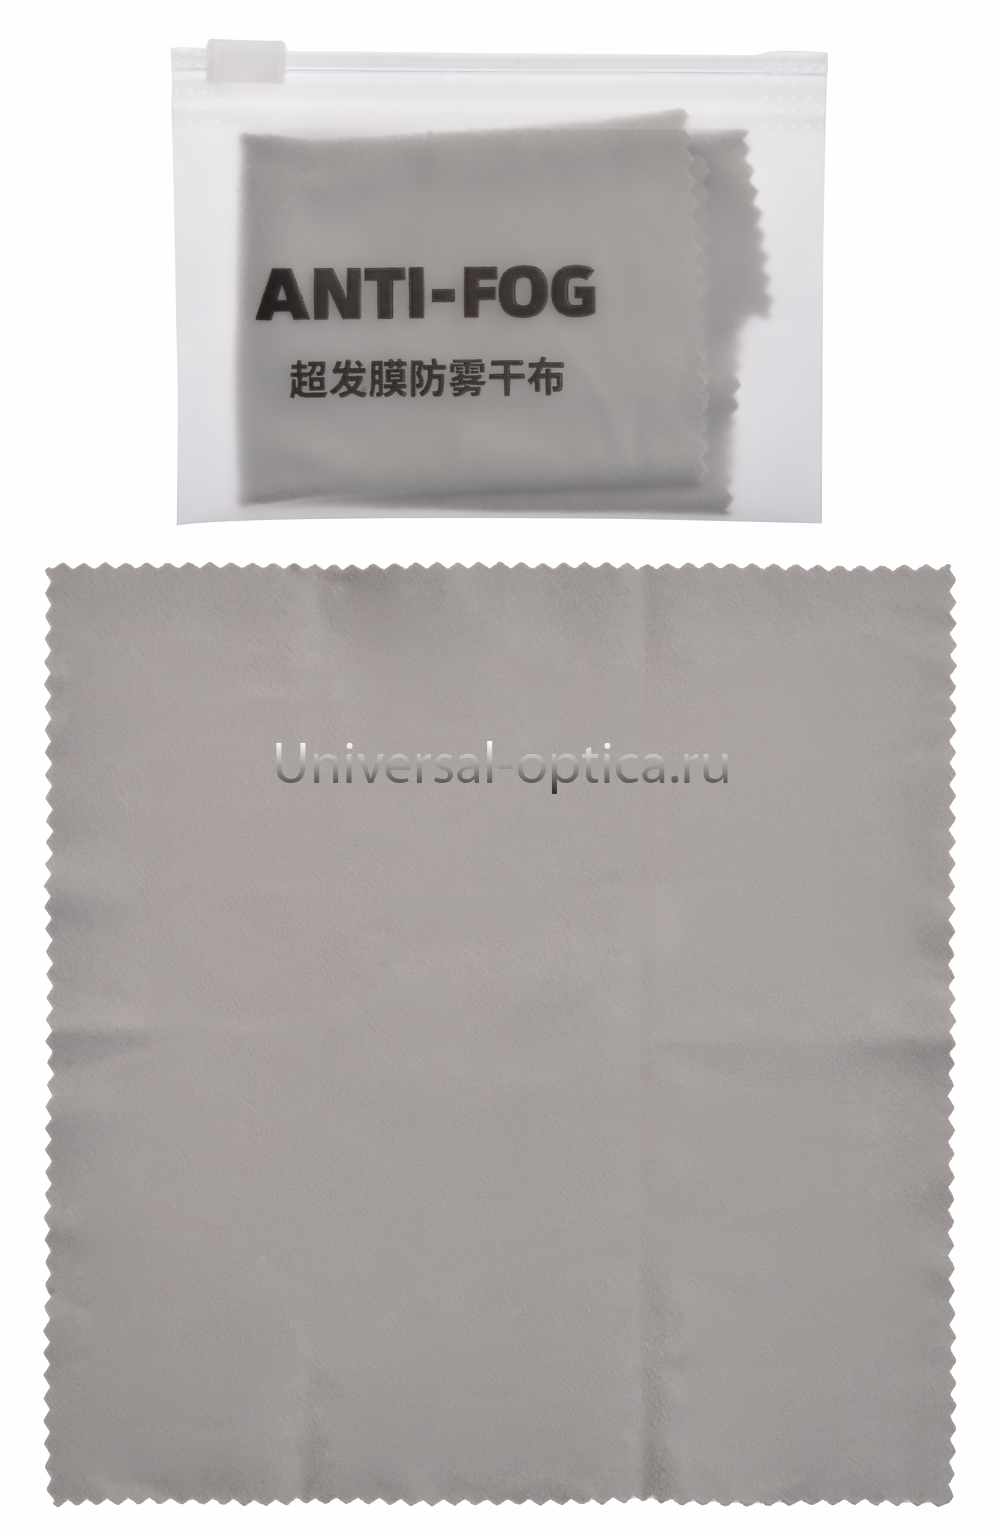 Салфетка сухая "Anti-fog" (Китай) от Торгового дома Универсал || universal-optica.ru